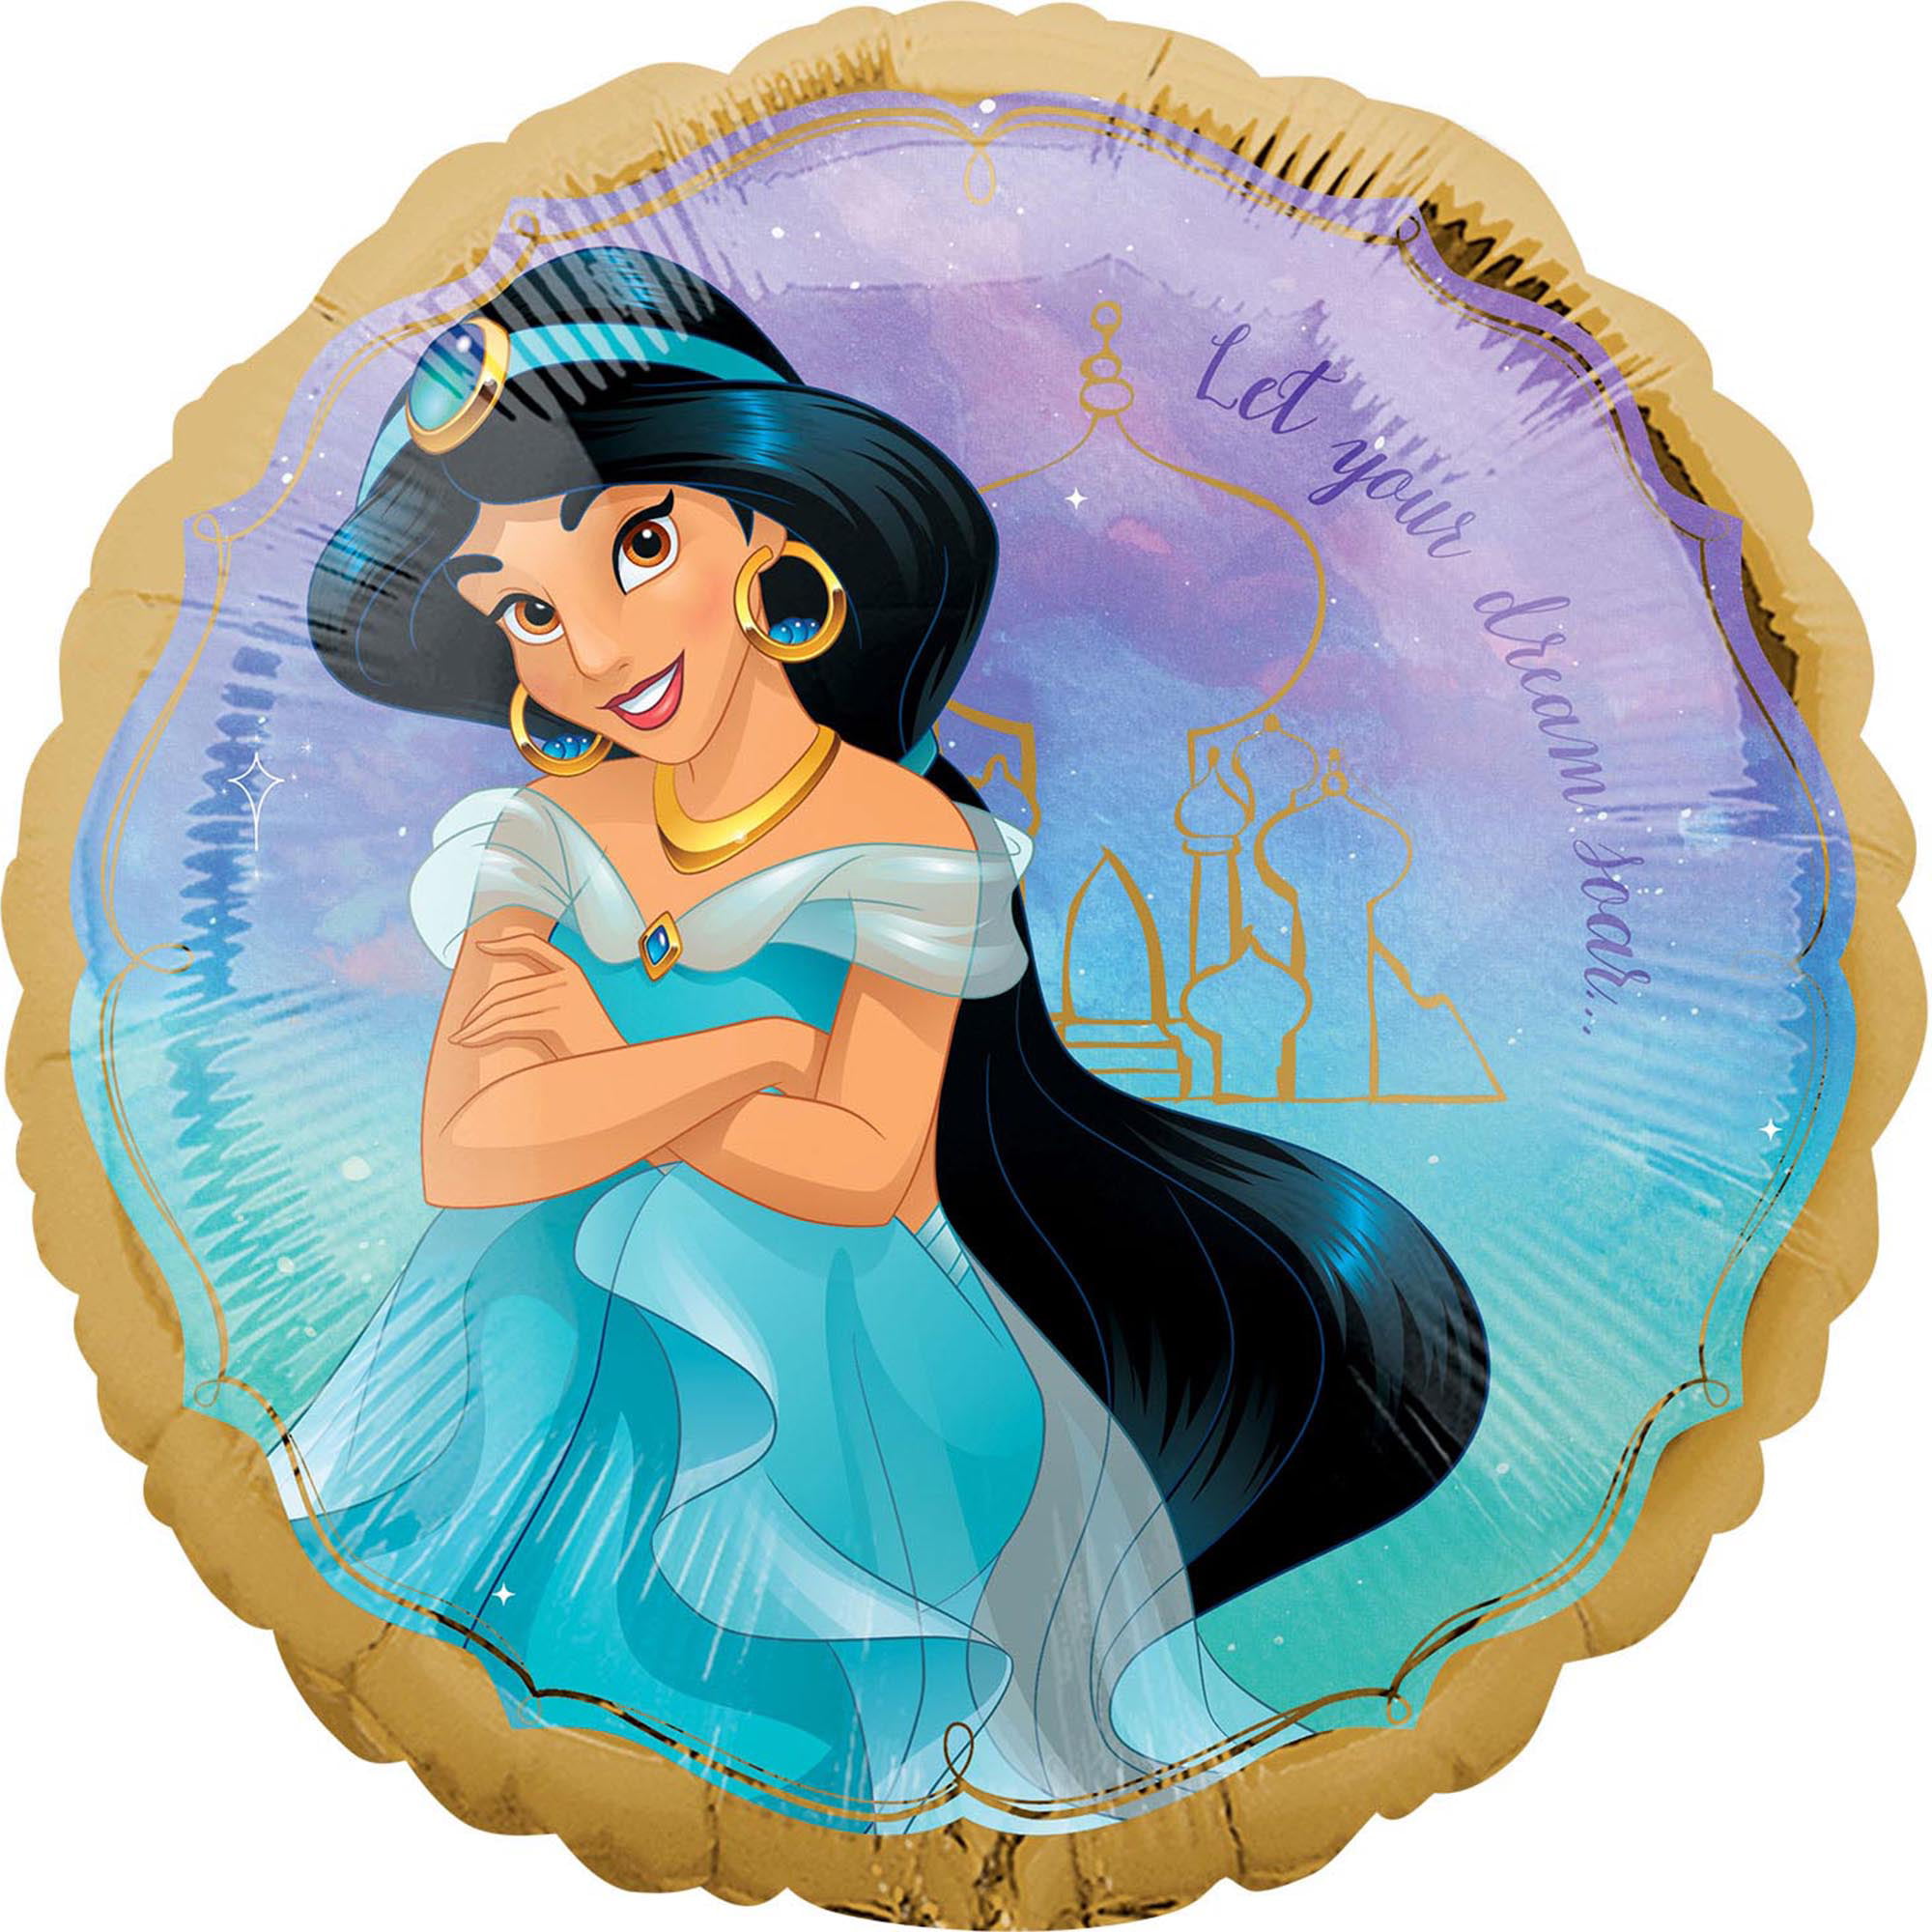 Disney Snow White SuperShape Balloon Birthday 37" Foil princess Balloon